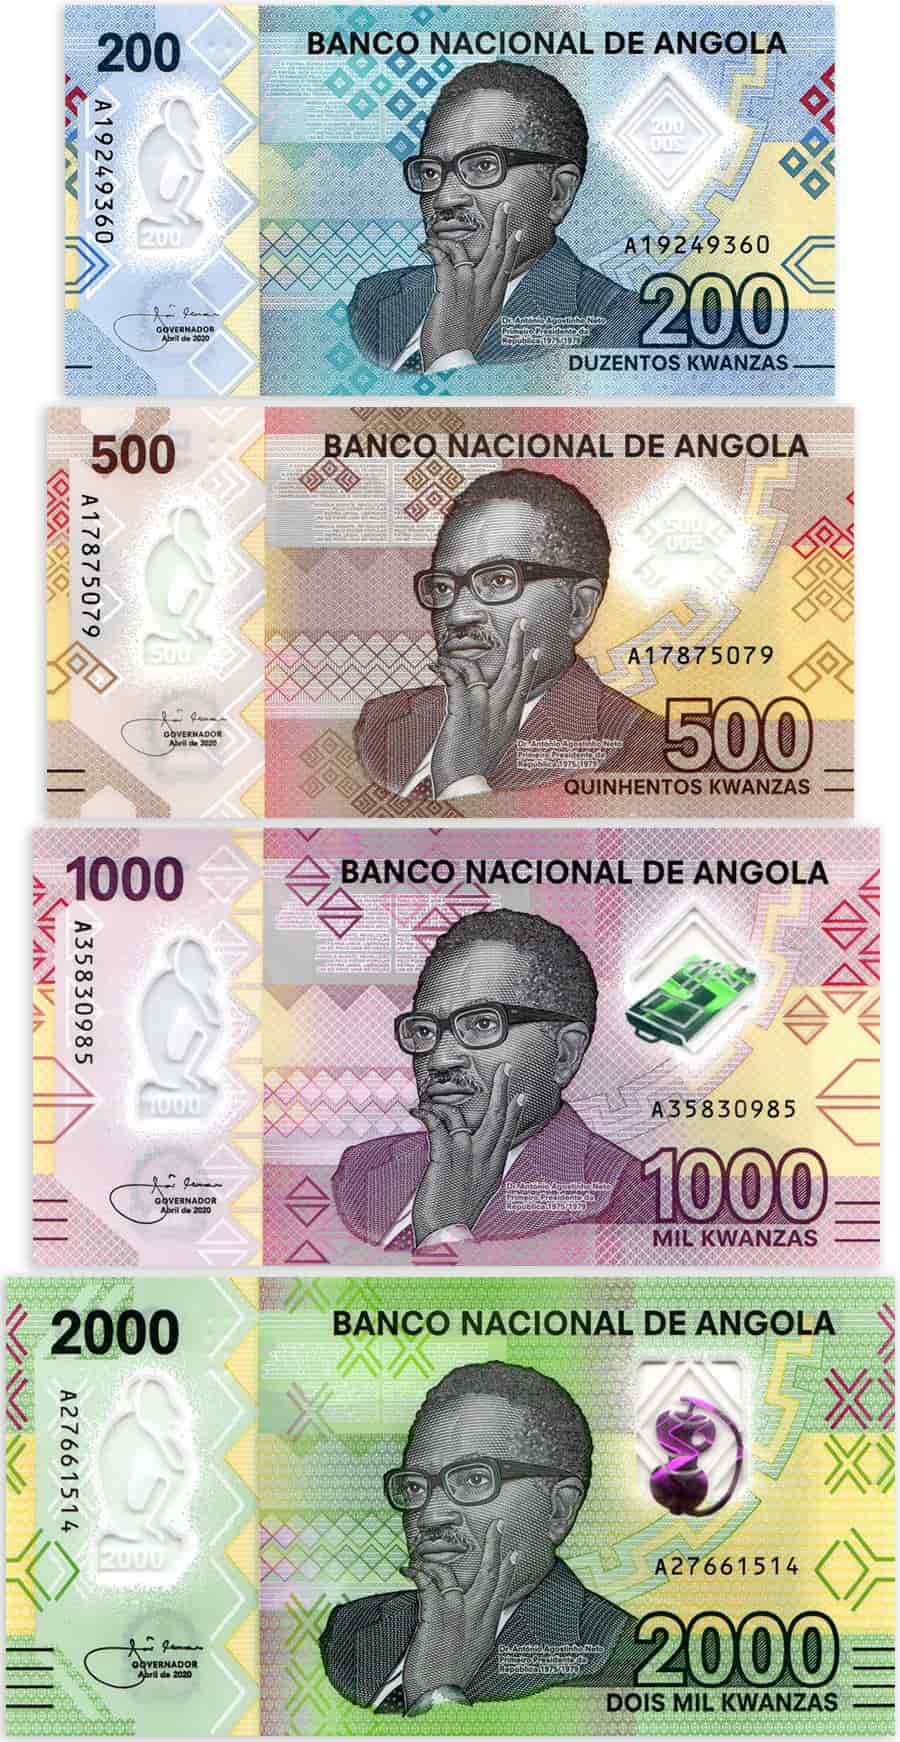 Hệ thống tiền tệ của nước Angola